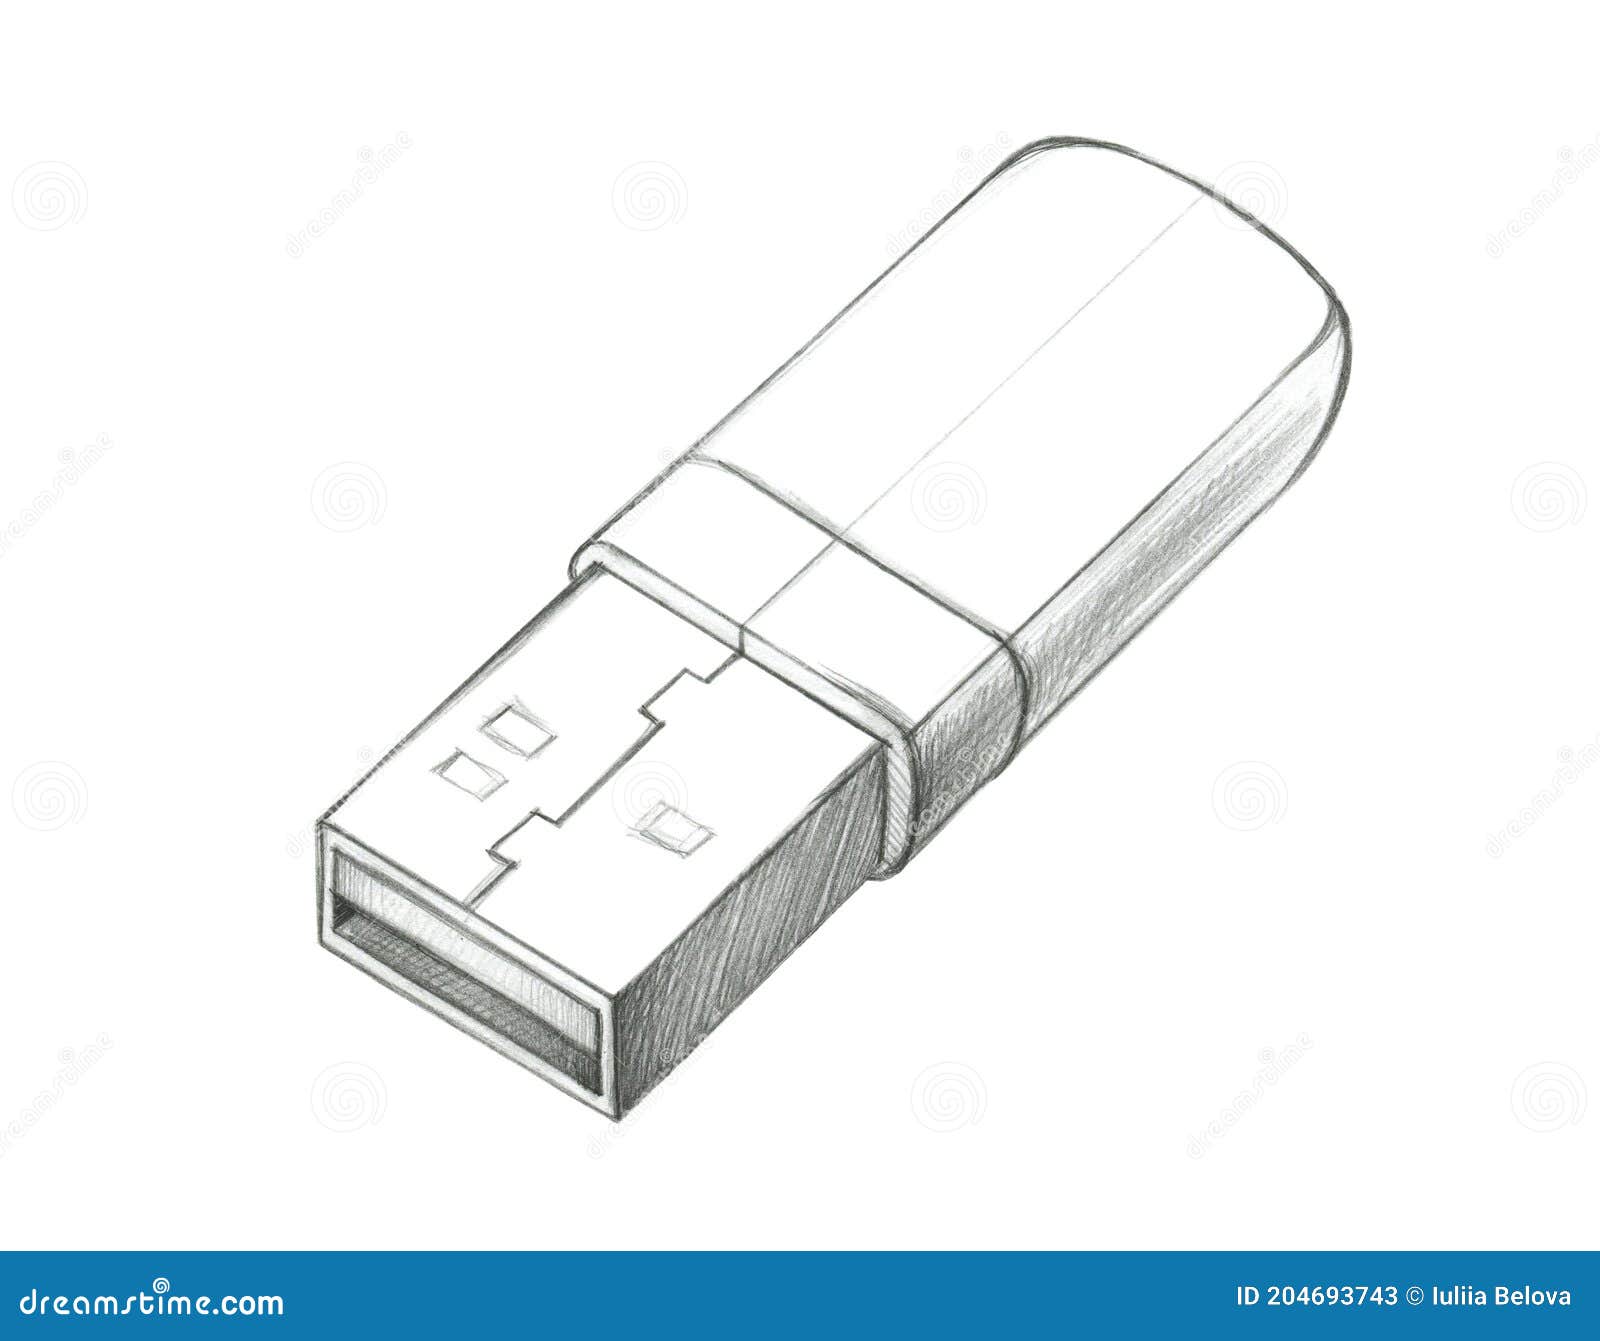 File:USB-thumb-drive-16-GB.jpg - Wikipedia